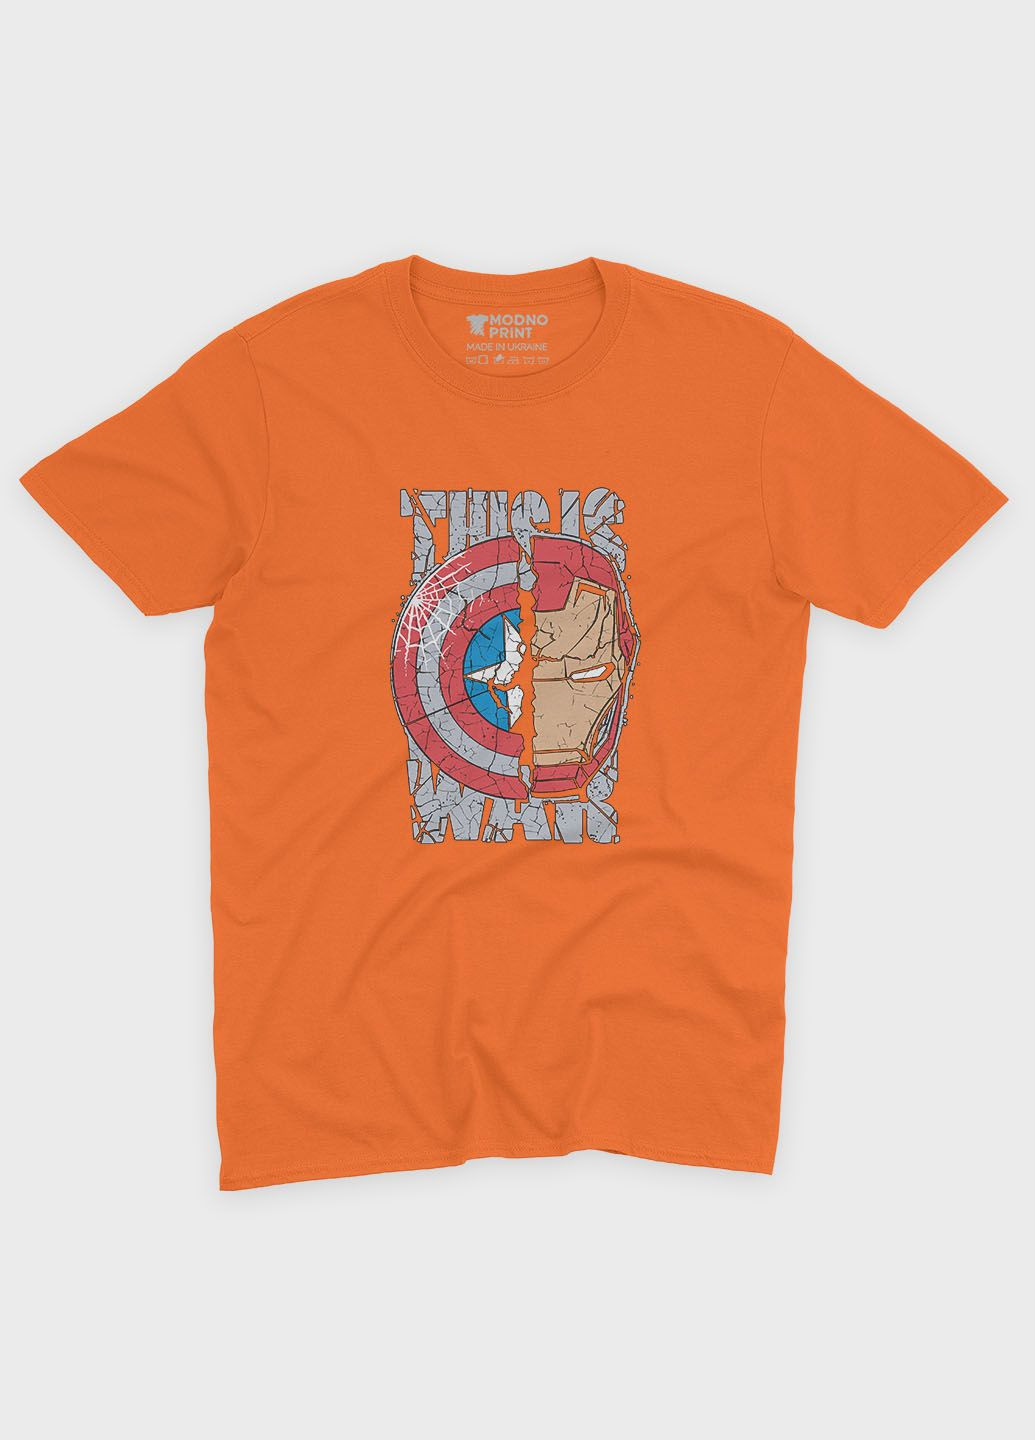 Помаранчева демісезонна футболка для хлопчика з принтом супергероя - залізна людина (ts001-1-ora-006-016-021-b) Modno